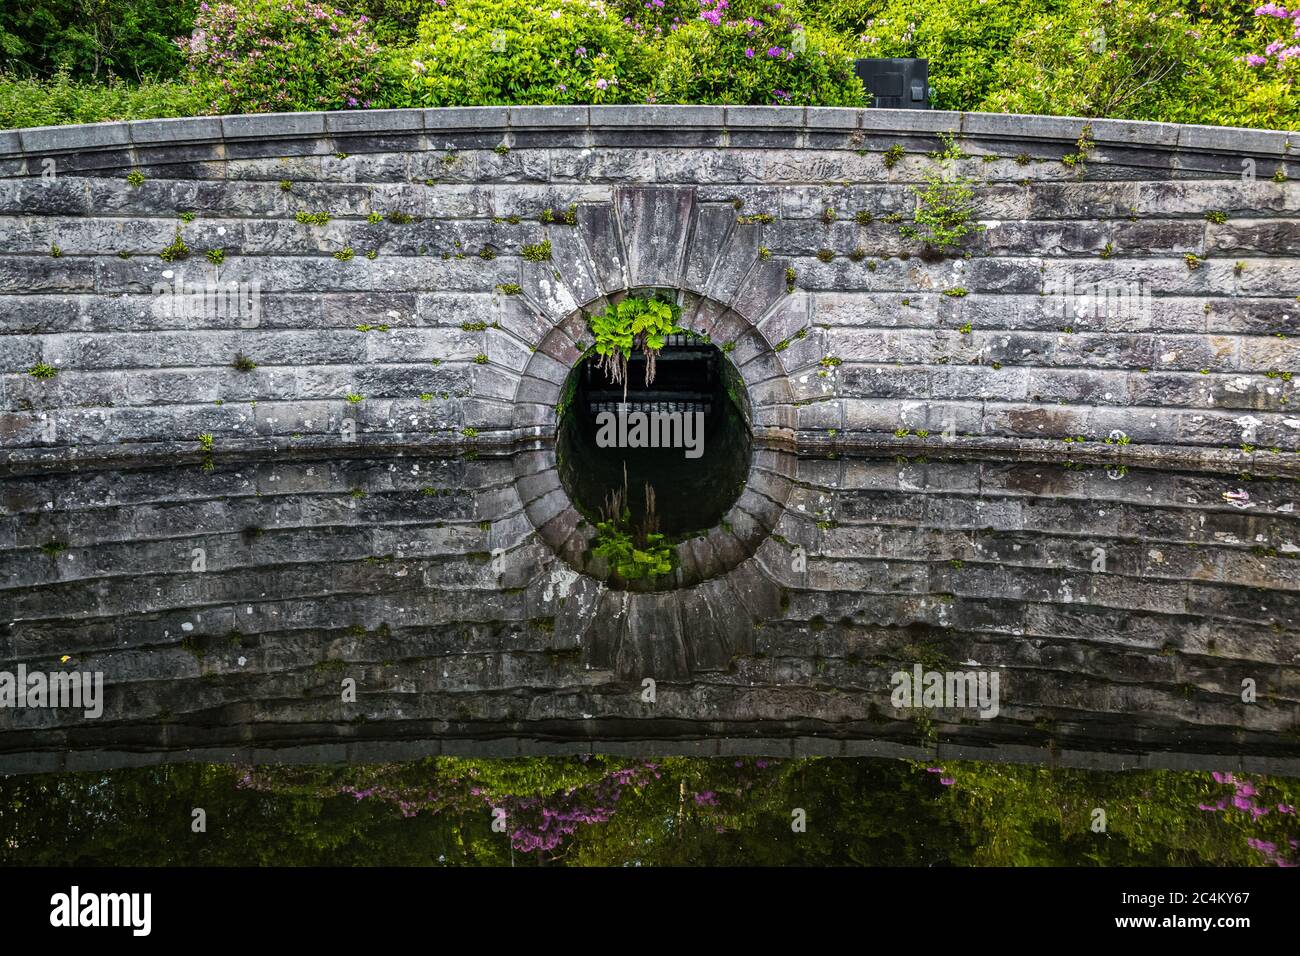 Détail d'un ancien barrage en pierre qui se reflète dans l'eau à Milngavie Waterworks, l'installation de traitement de l'eau située à Milngavie, en Écosse. Banque D'Images